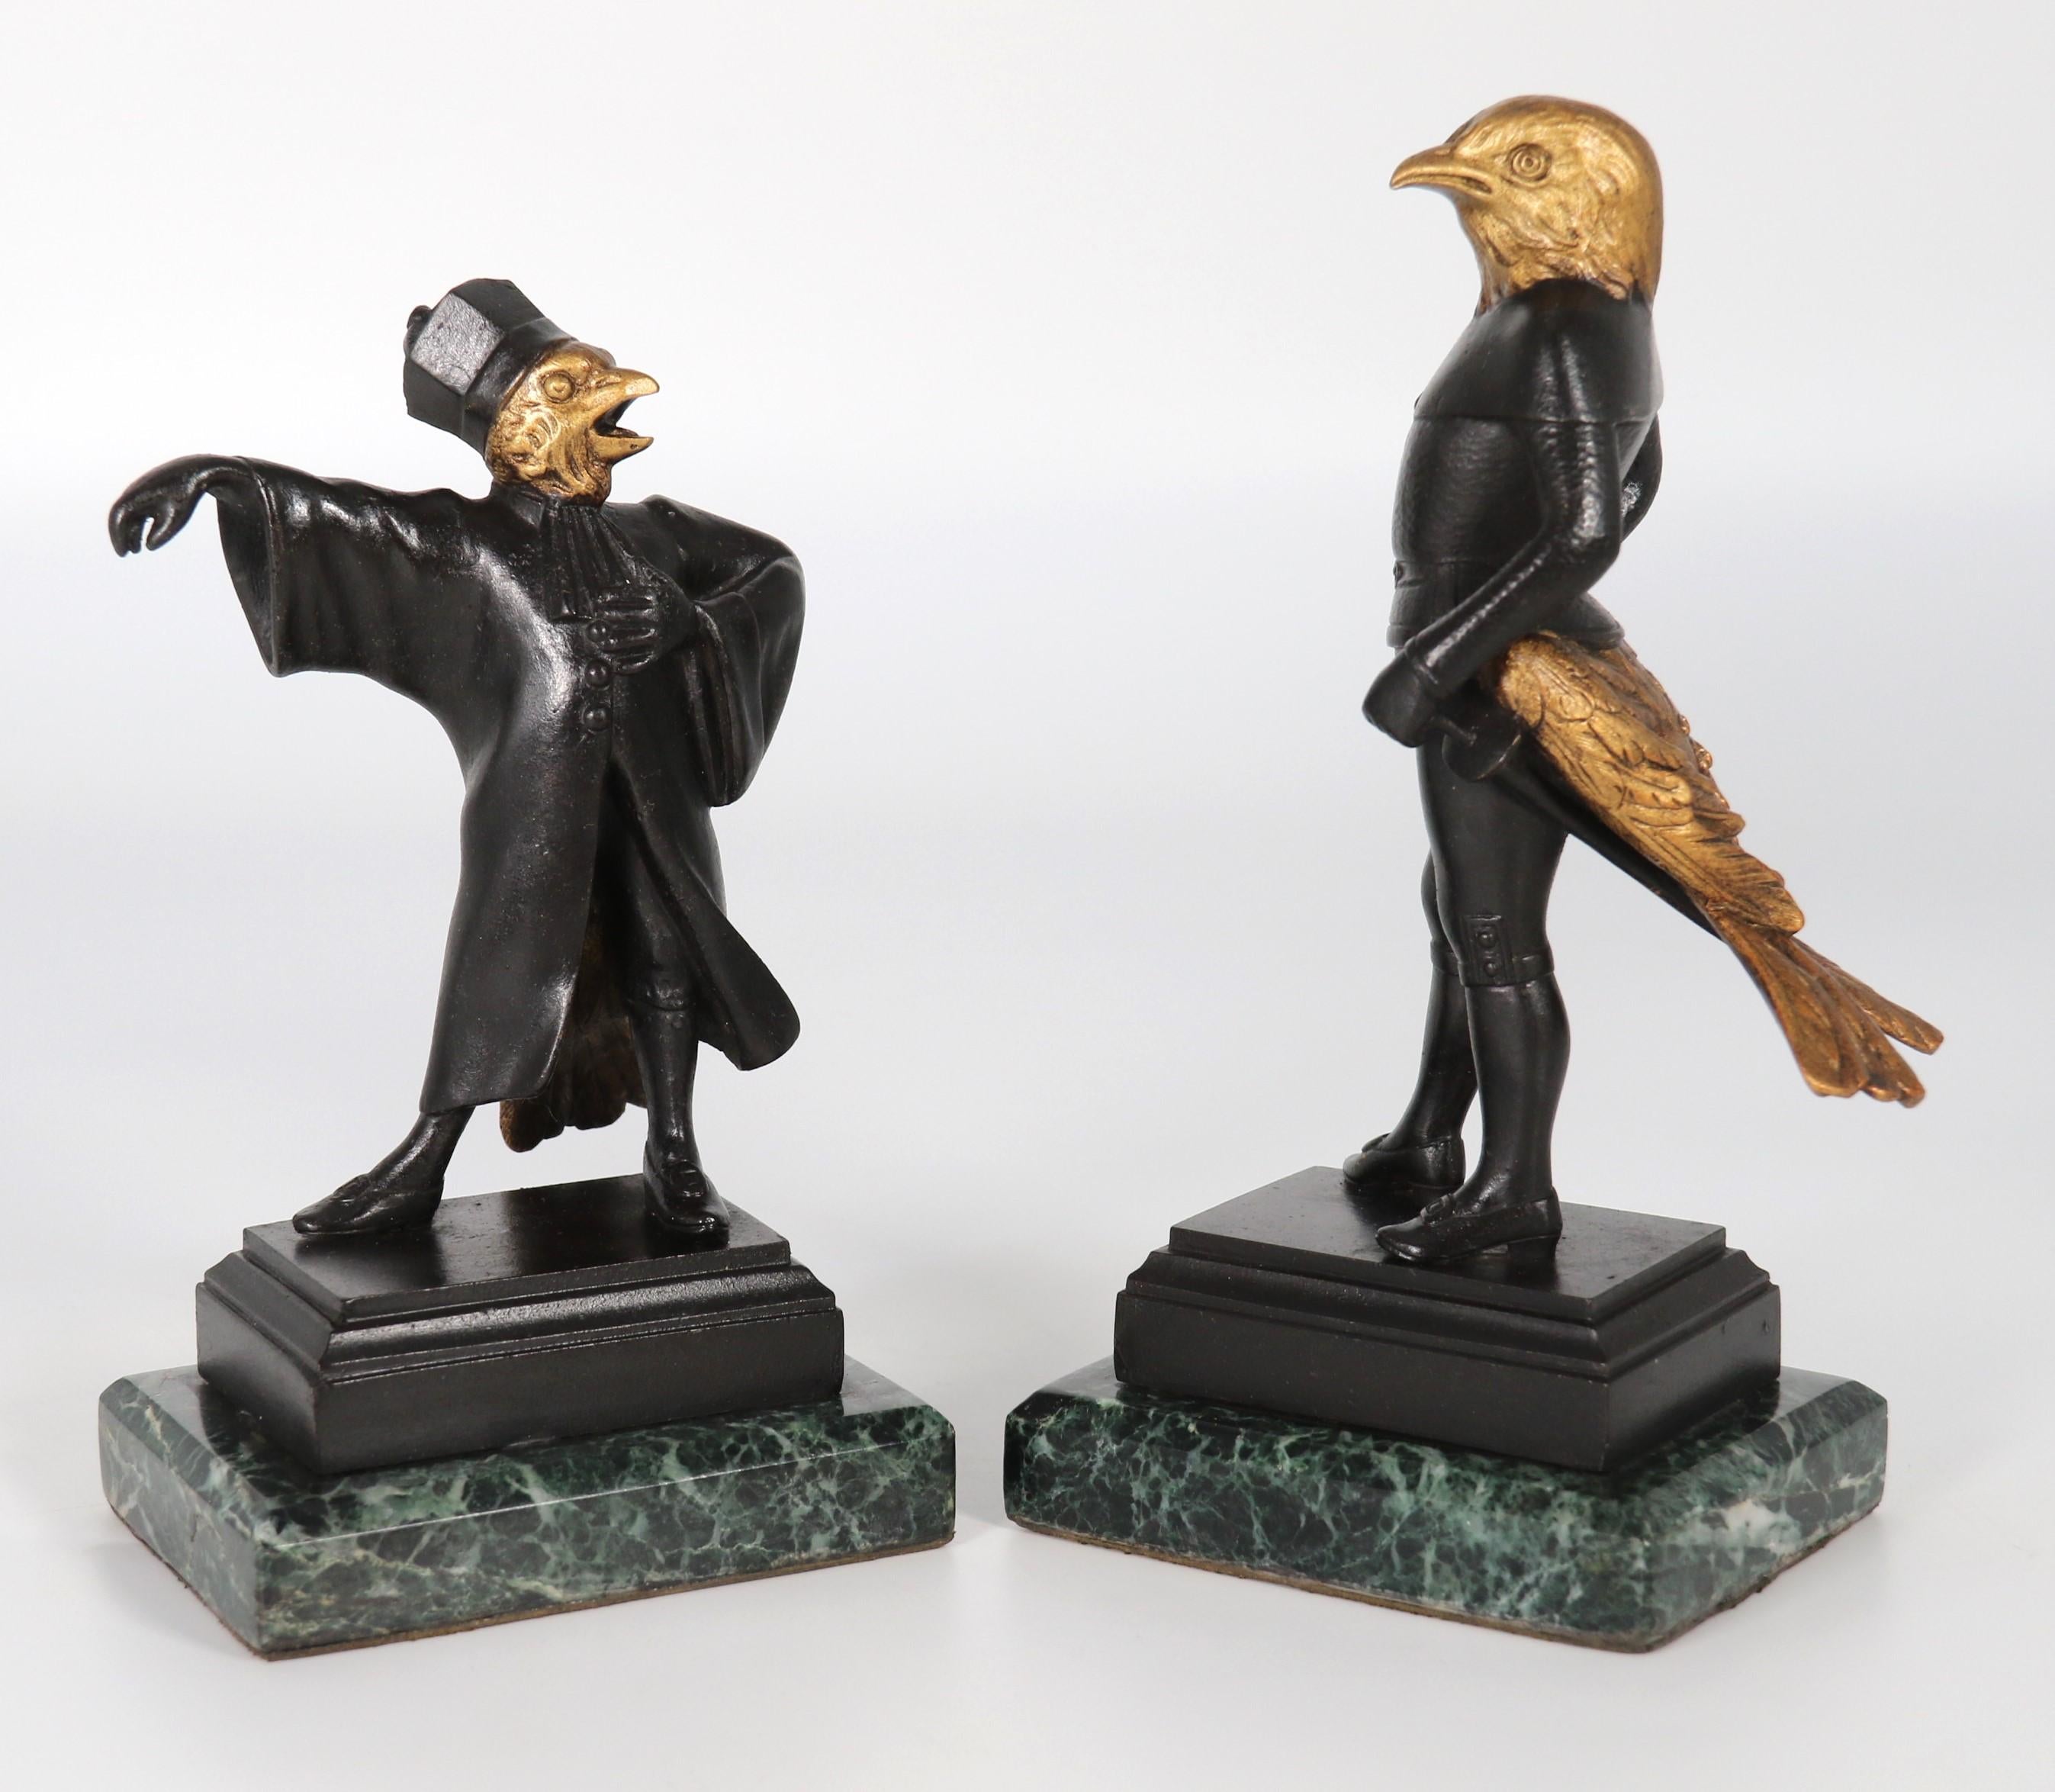 Une paire très inhabituelle de figurines en bronze de la fin du XIXe siècle représentant des caricatures d'un choucas et d'un corbeau, chacun avec un corps humain comprenant le torse, les jambes et les bras,  Avec une tête d'oiseau et des plumes de